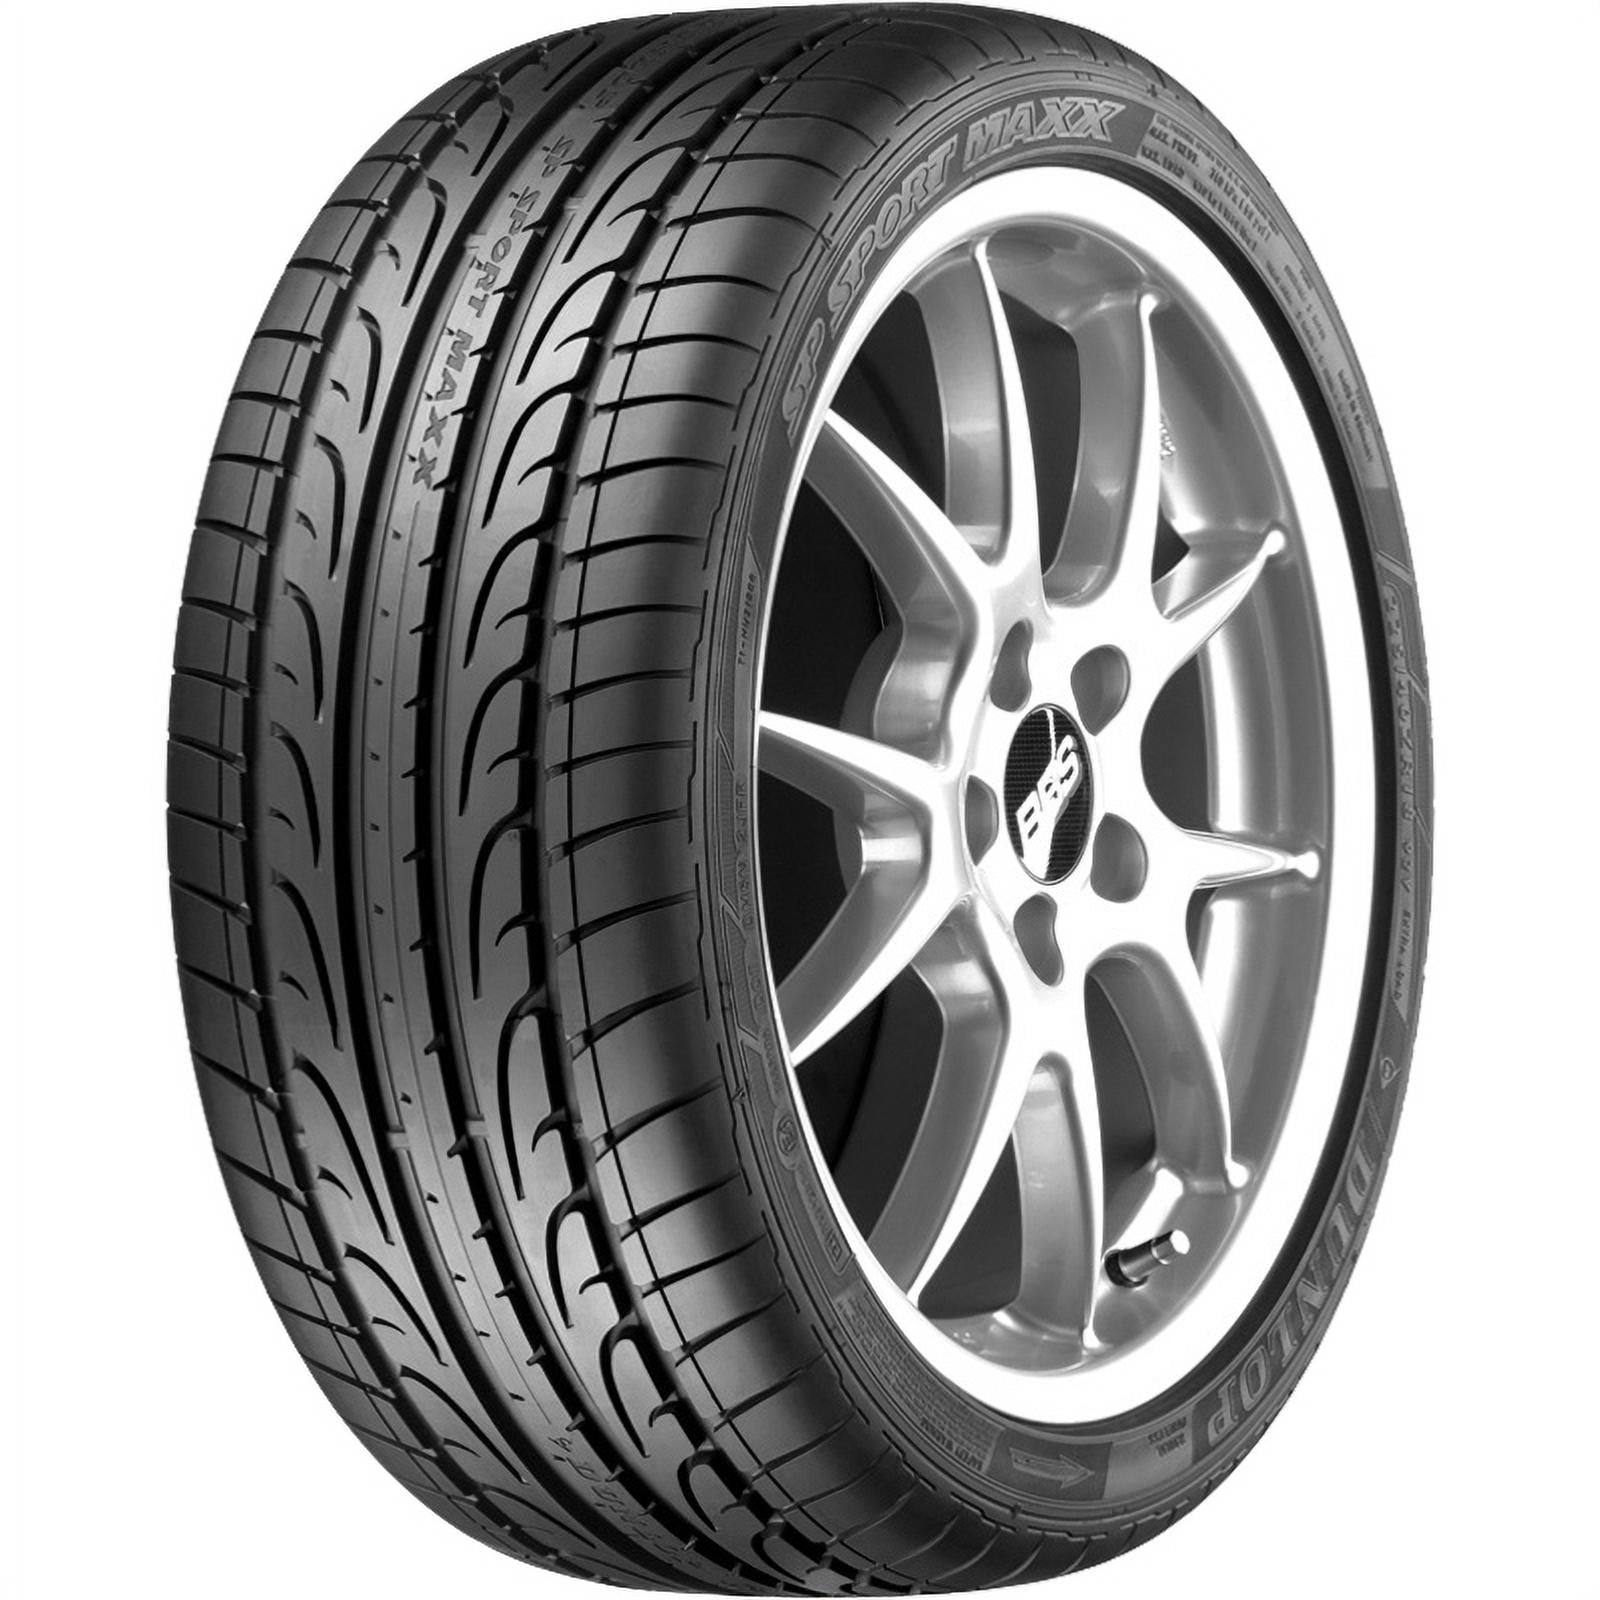 2016-23 (OE) LT, Dunlop Flat Run 2013-15 Tire LTZ Chevrolet Chevrolet NRT Malibu Sport 245/40R19 050 DSST Fits: 94W SP Malibu Maxx